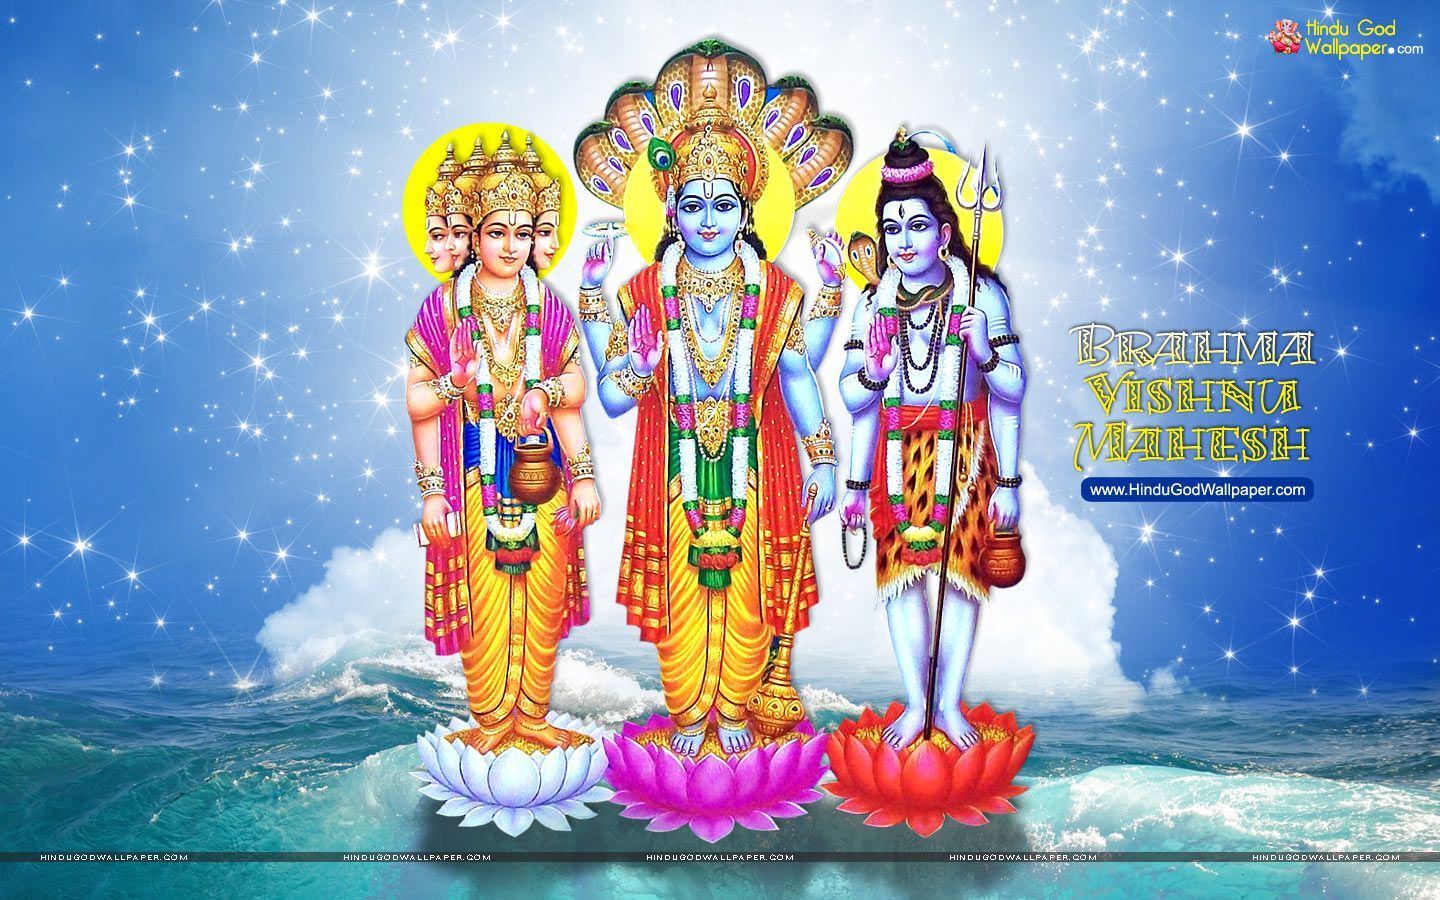 Brahma Vishnu Maheshwara Wallpaper Free Download. Wallpaper free download, Lord vishnu wallpaper, Lord vishnu